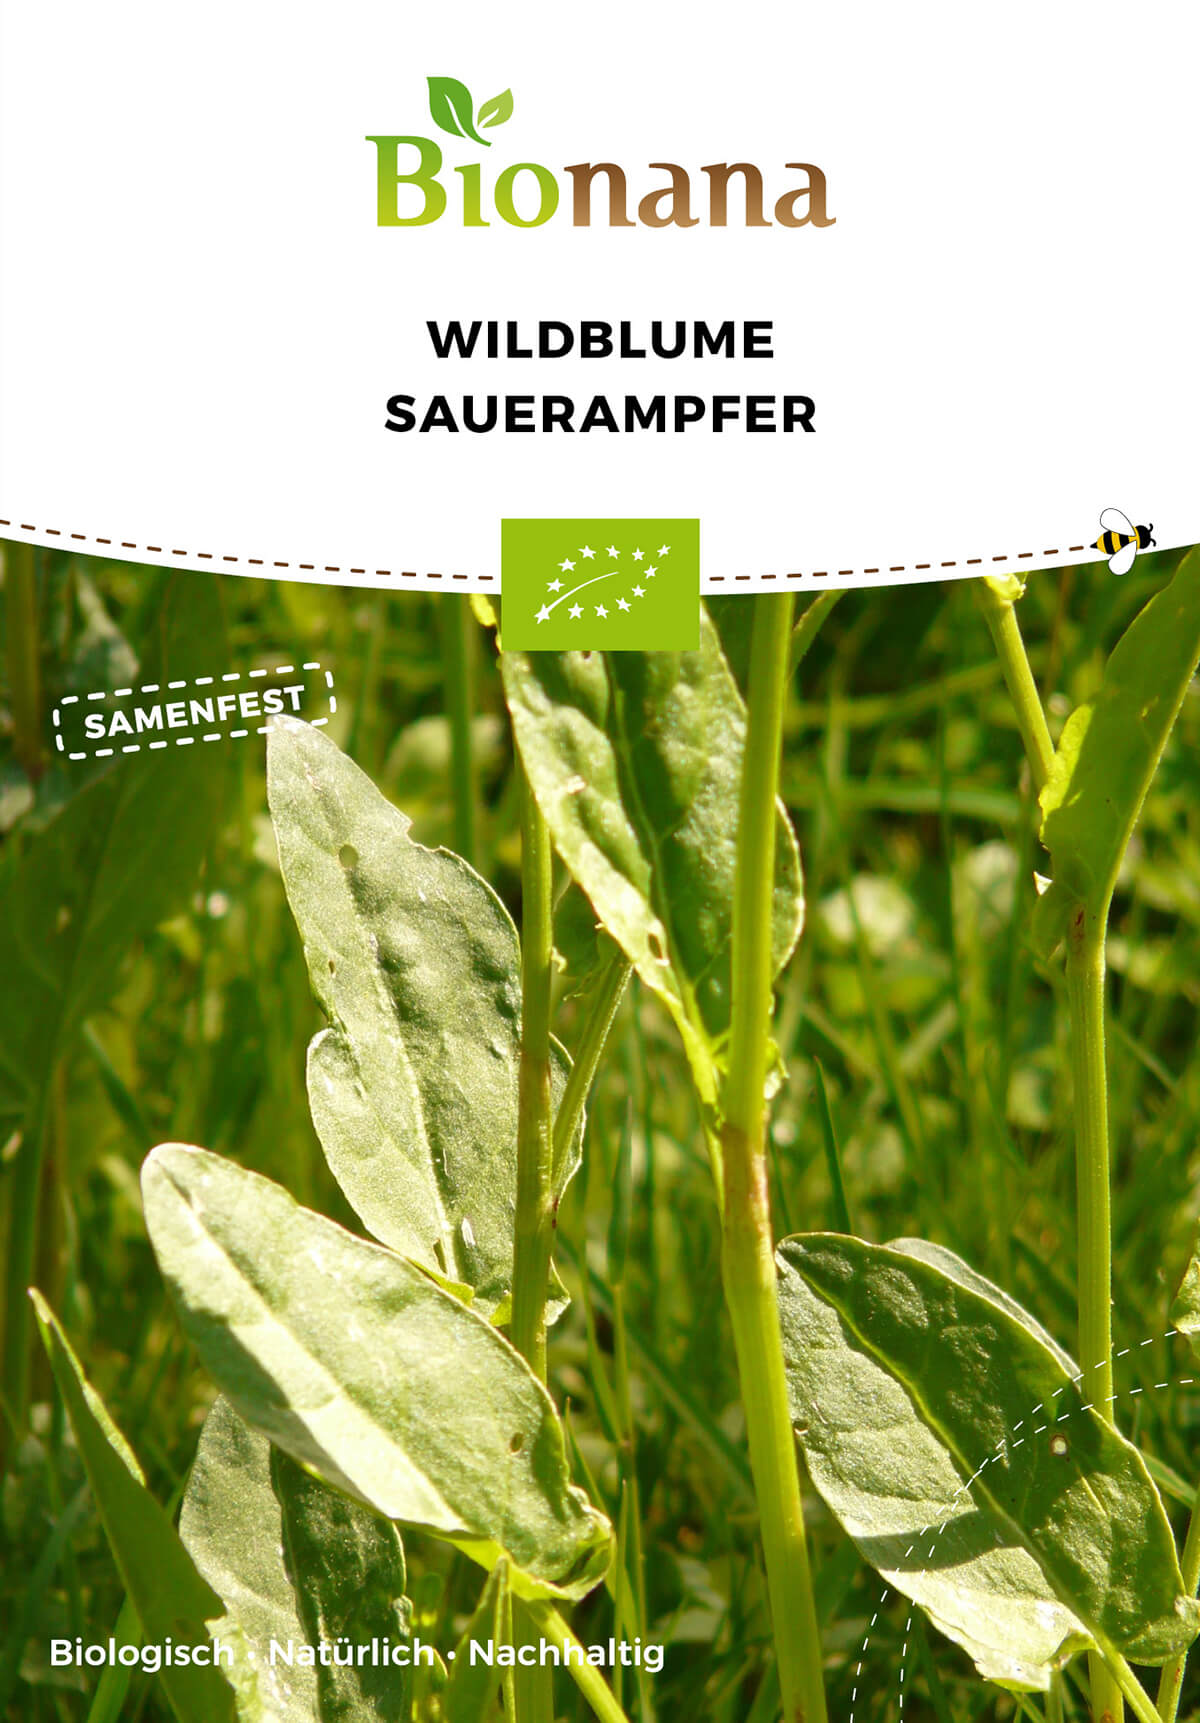 Wildblume Sauerampfer | BIO Wildblumensamen von Bionana [MHD 12/2023]